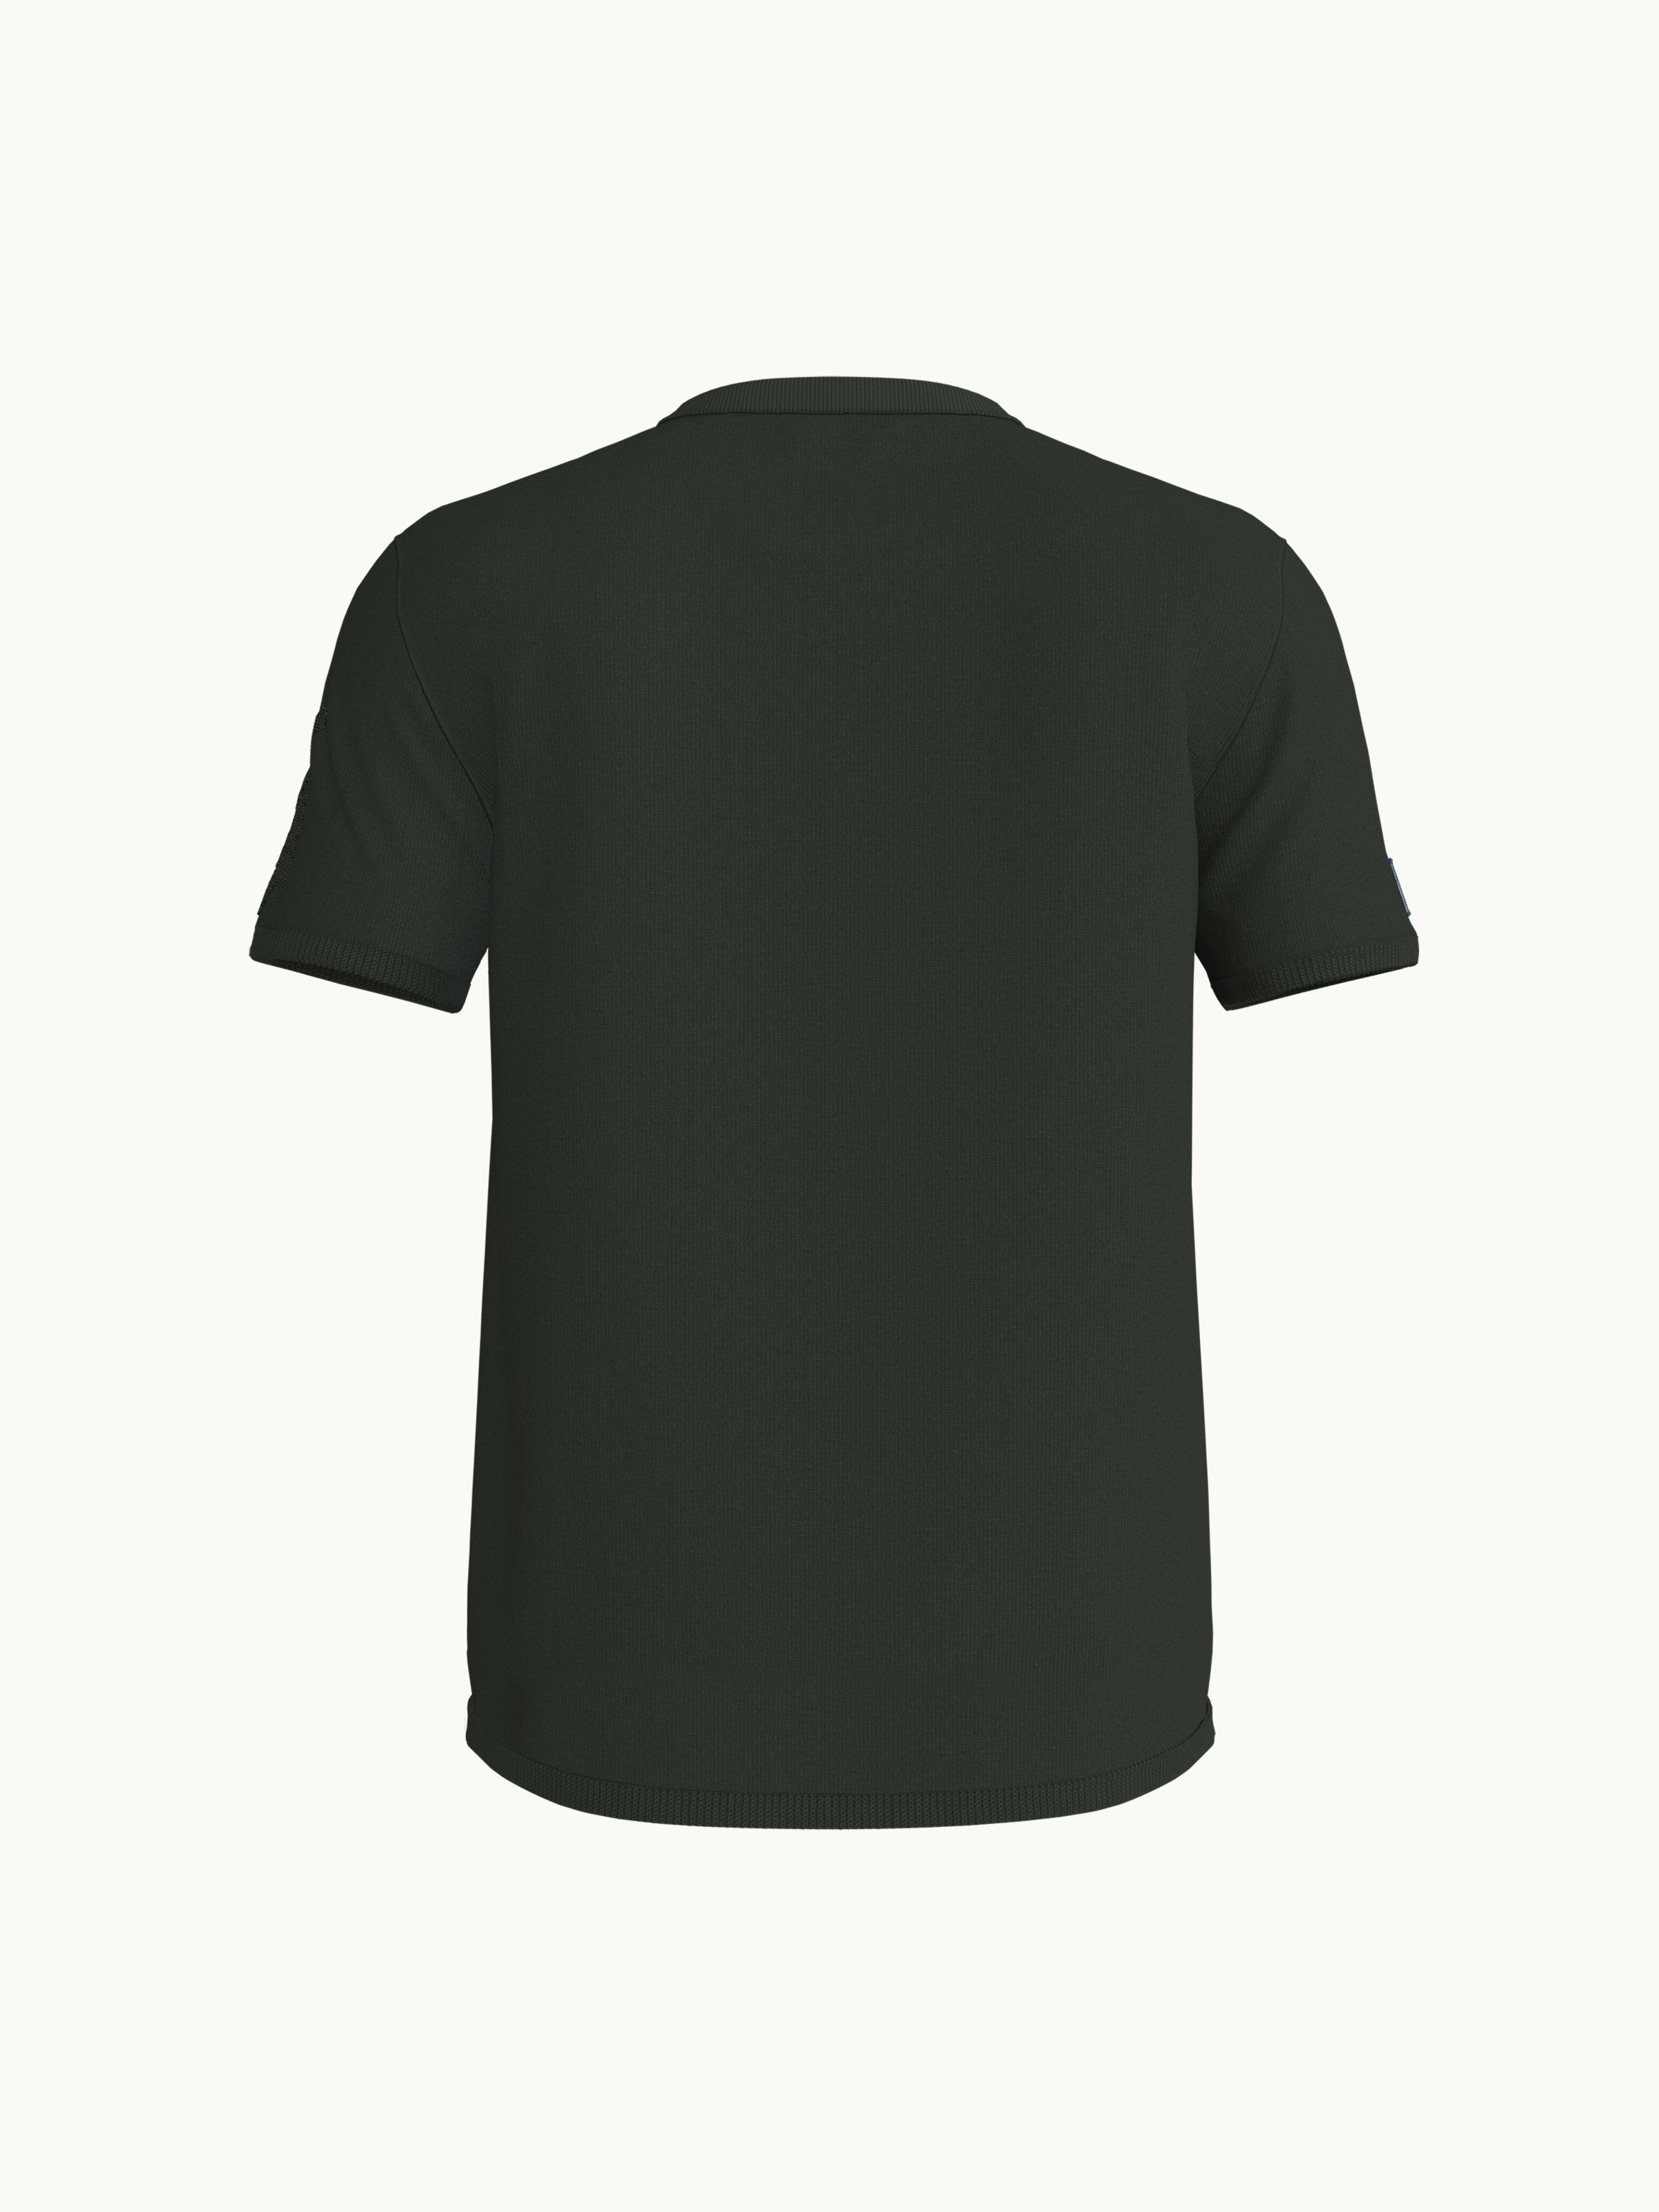 Men's T-Shirt - Earless Dragon Loden